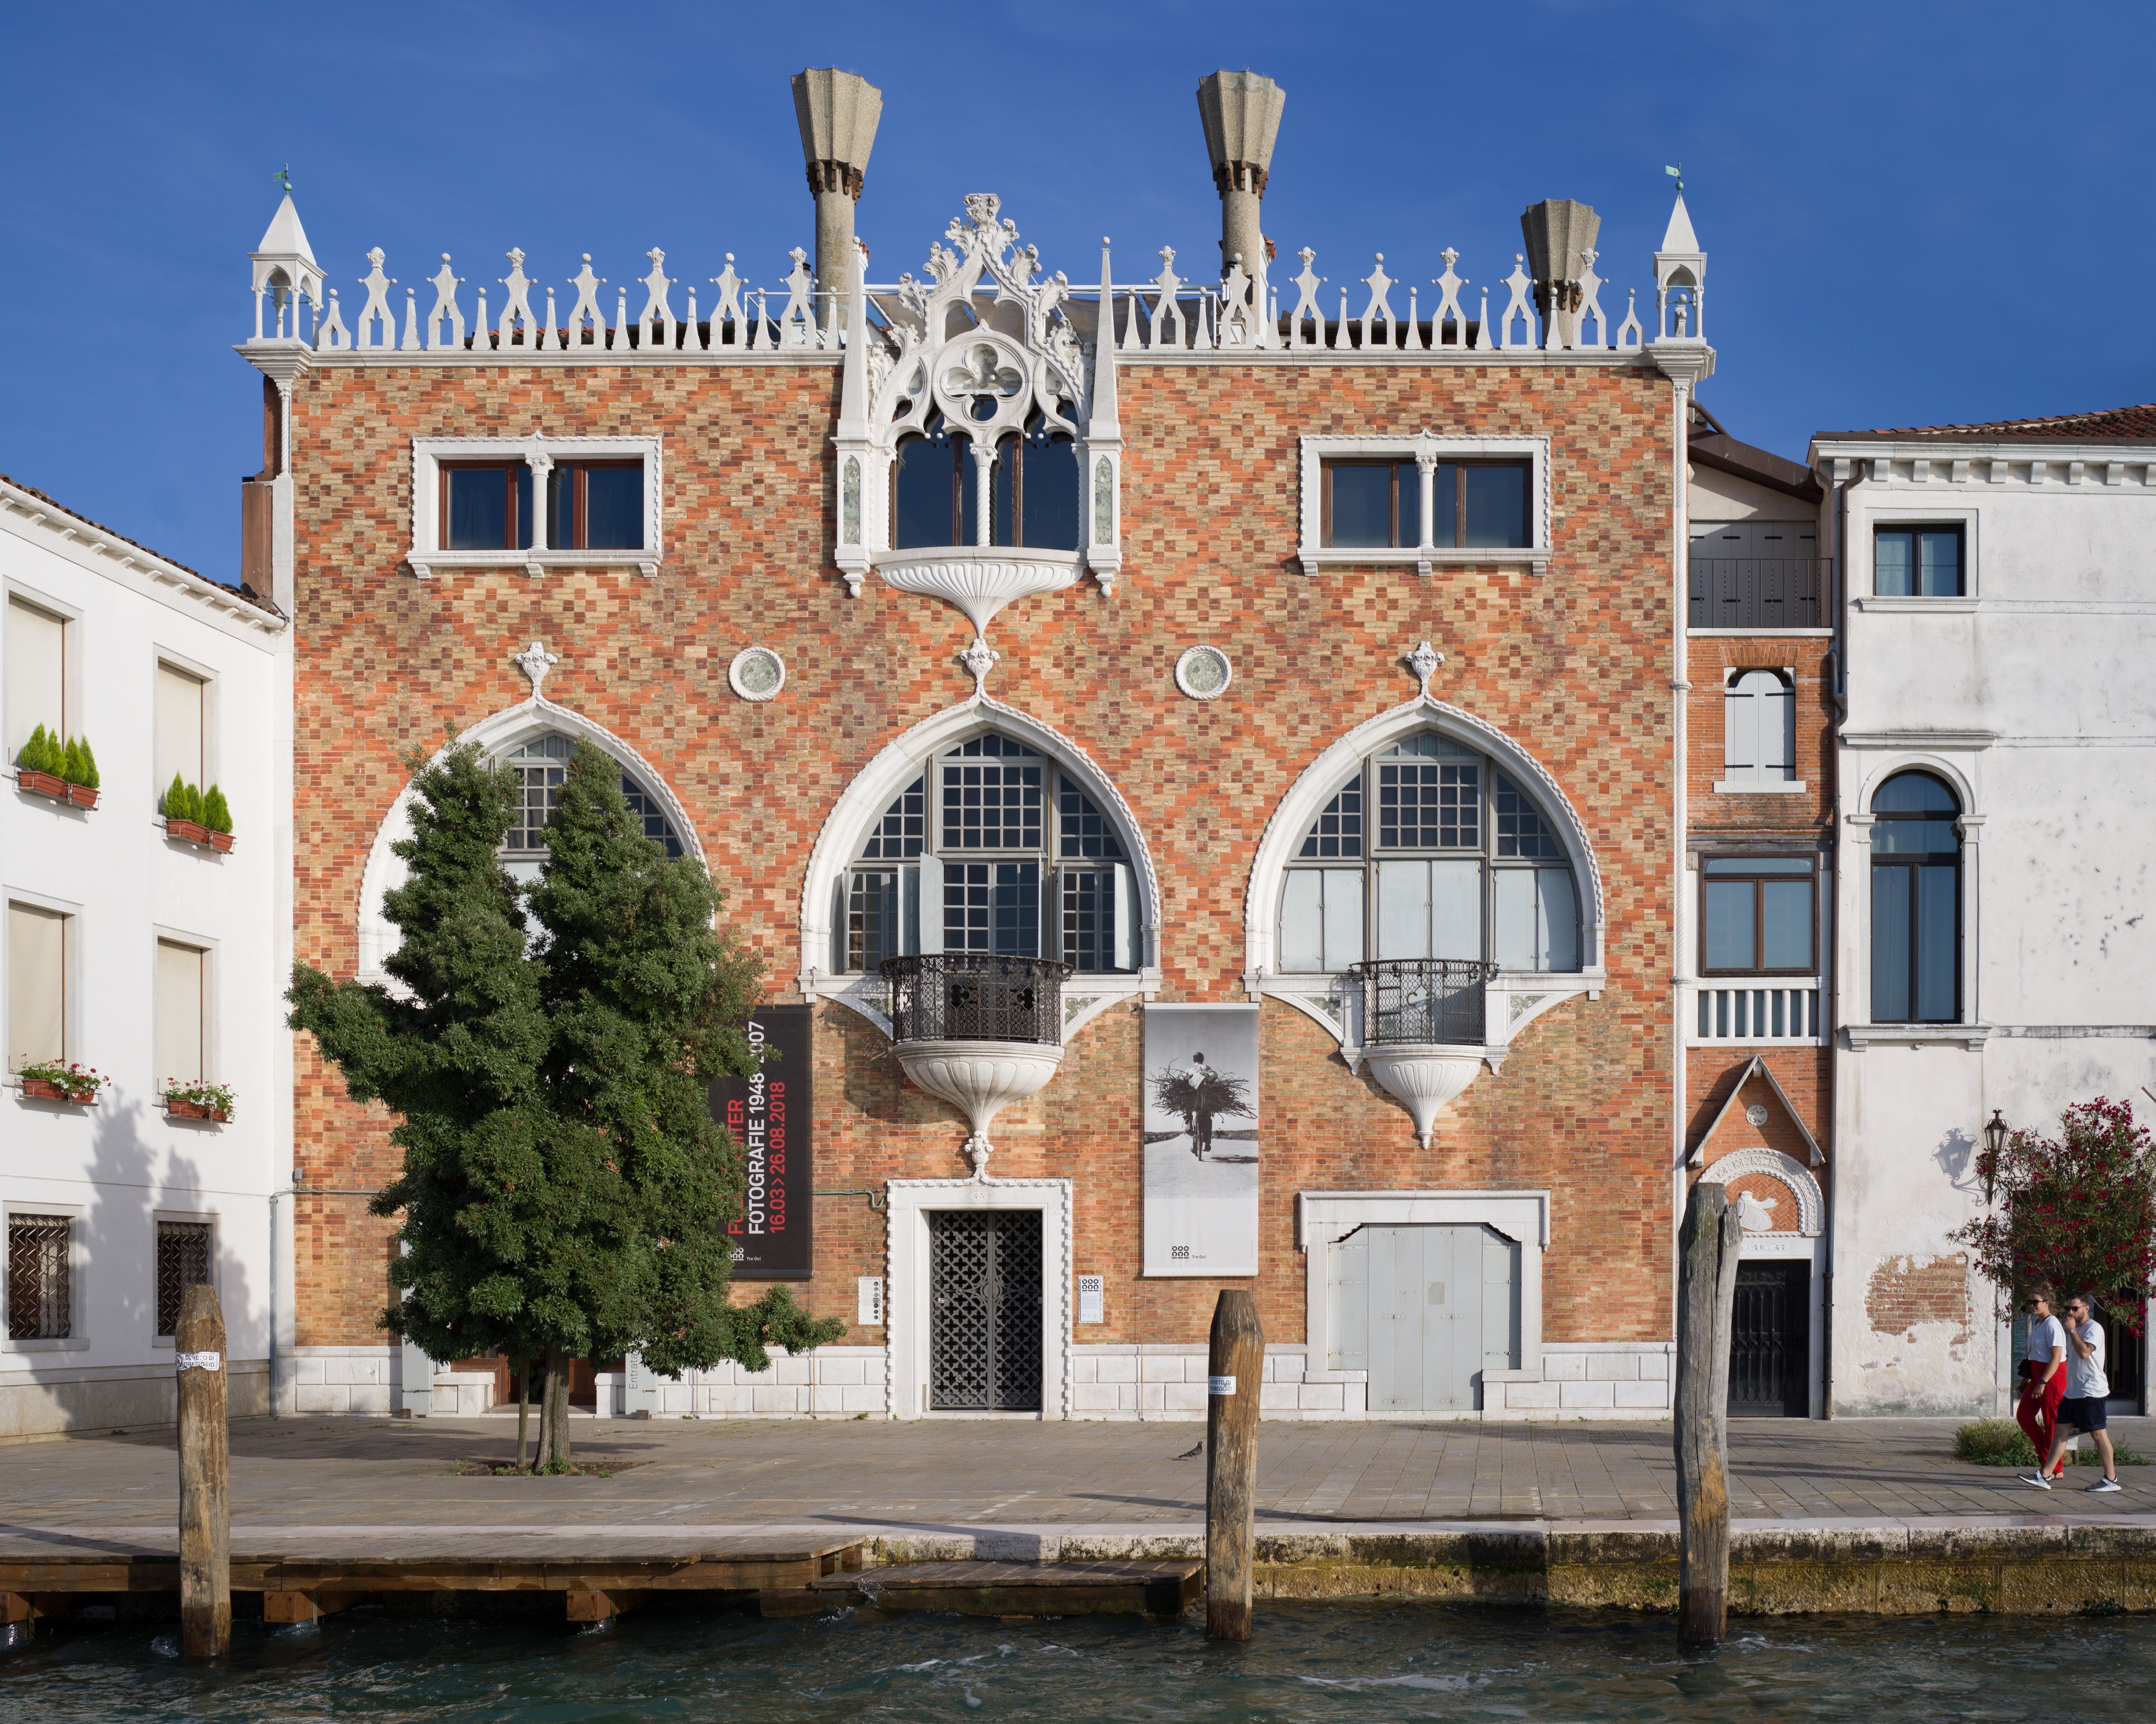 Casa dei Tre Oci Giudecca Venezia mostra Fulvio Roiter